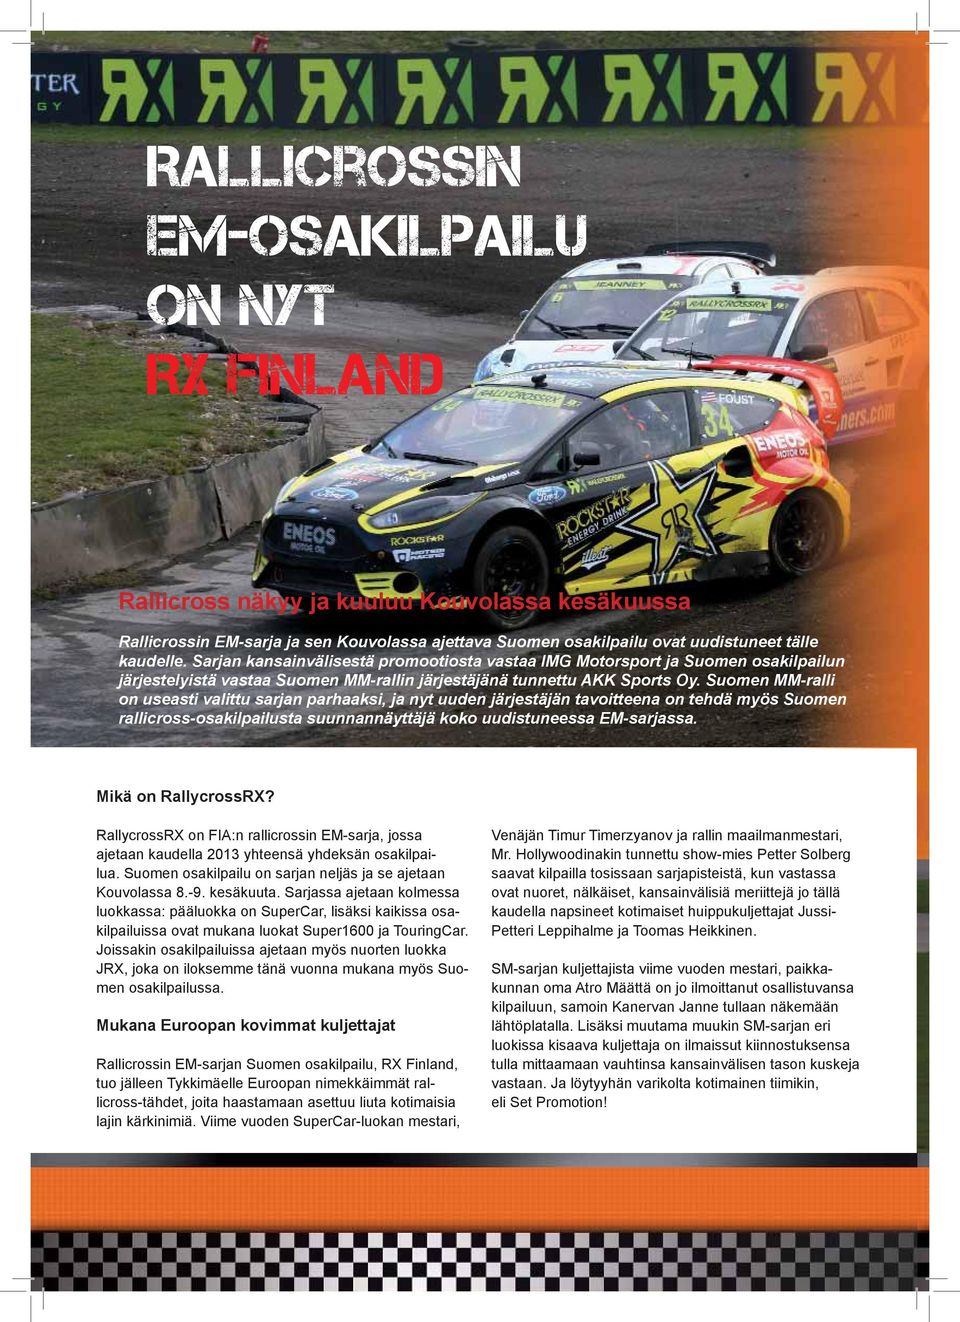 Suomen MM-ralli on useasti valittu sarjan parhaaksi, ja nyt uuden järjestäjän tavoitteena on tehdä myös Suomen rallicross-osakilpailusta suunnannäyttäjä koko uudistuneessa EM-sarjassa.